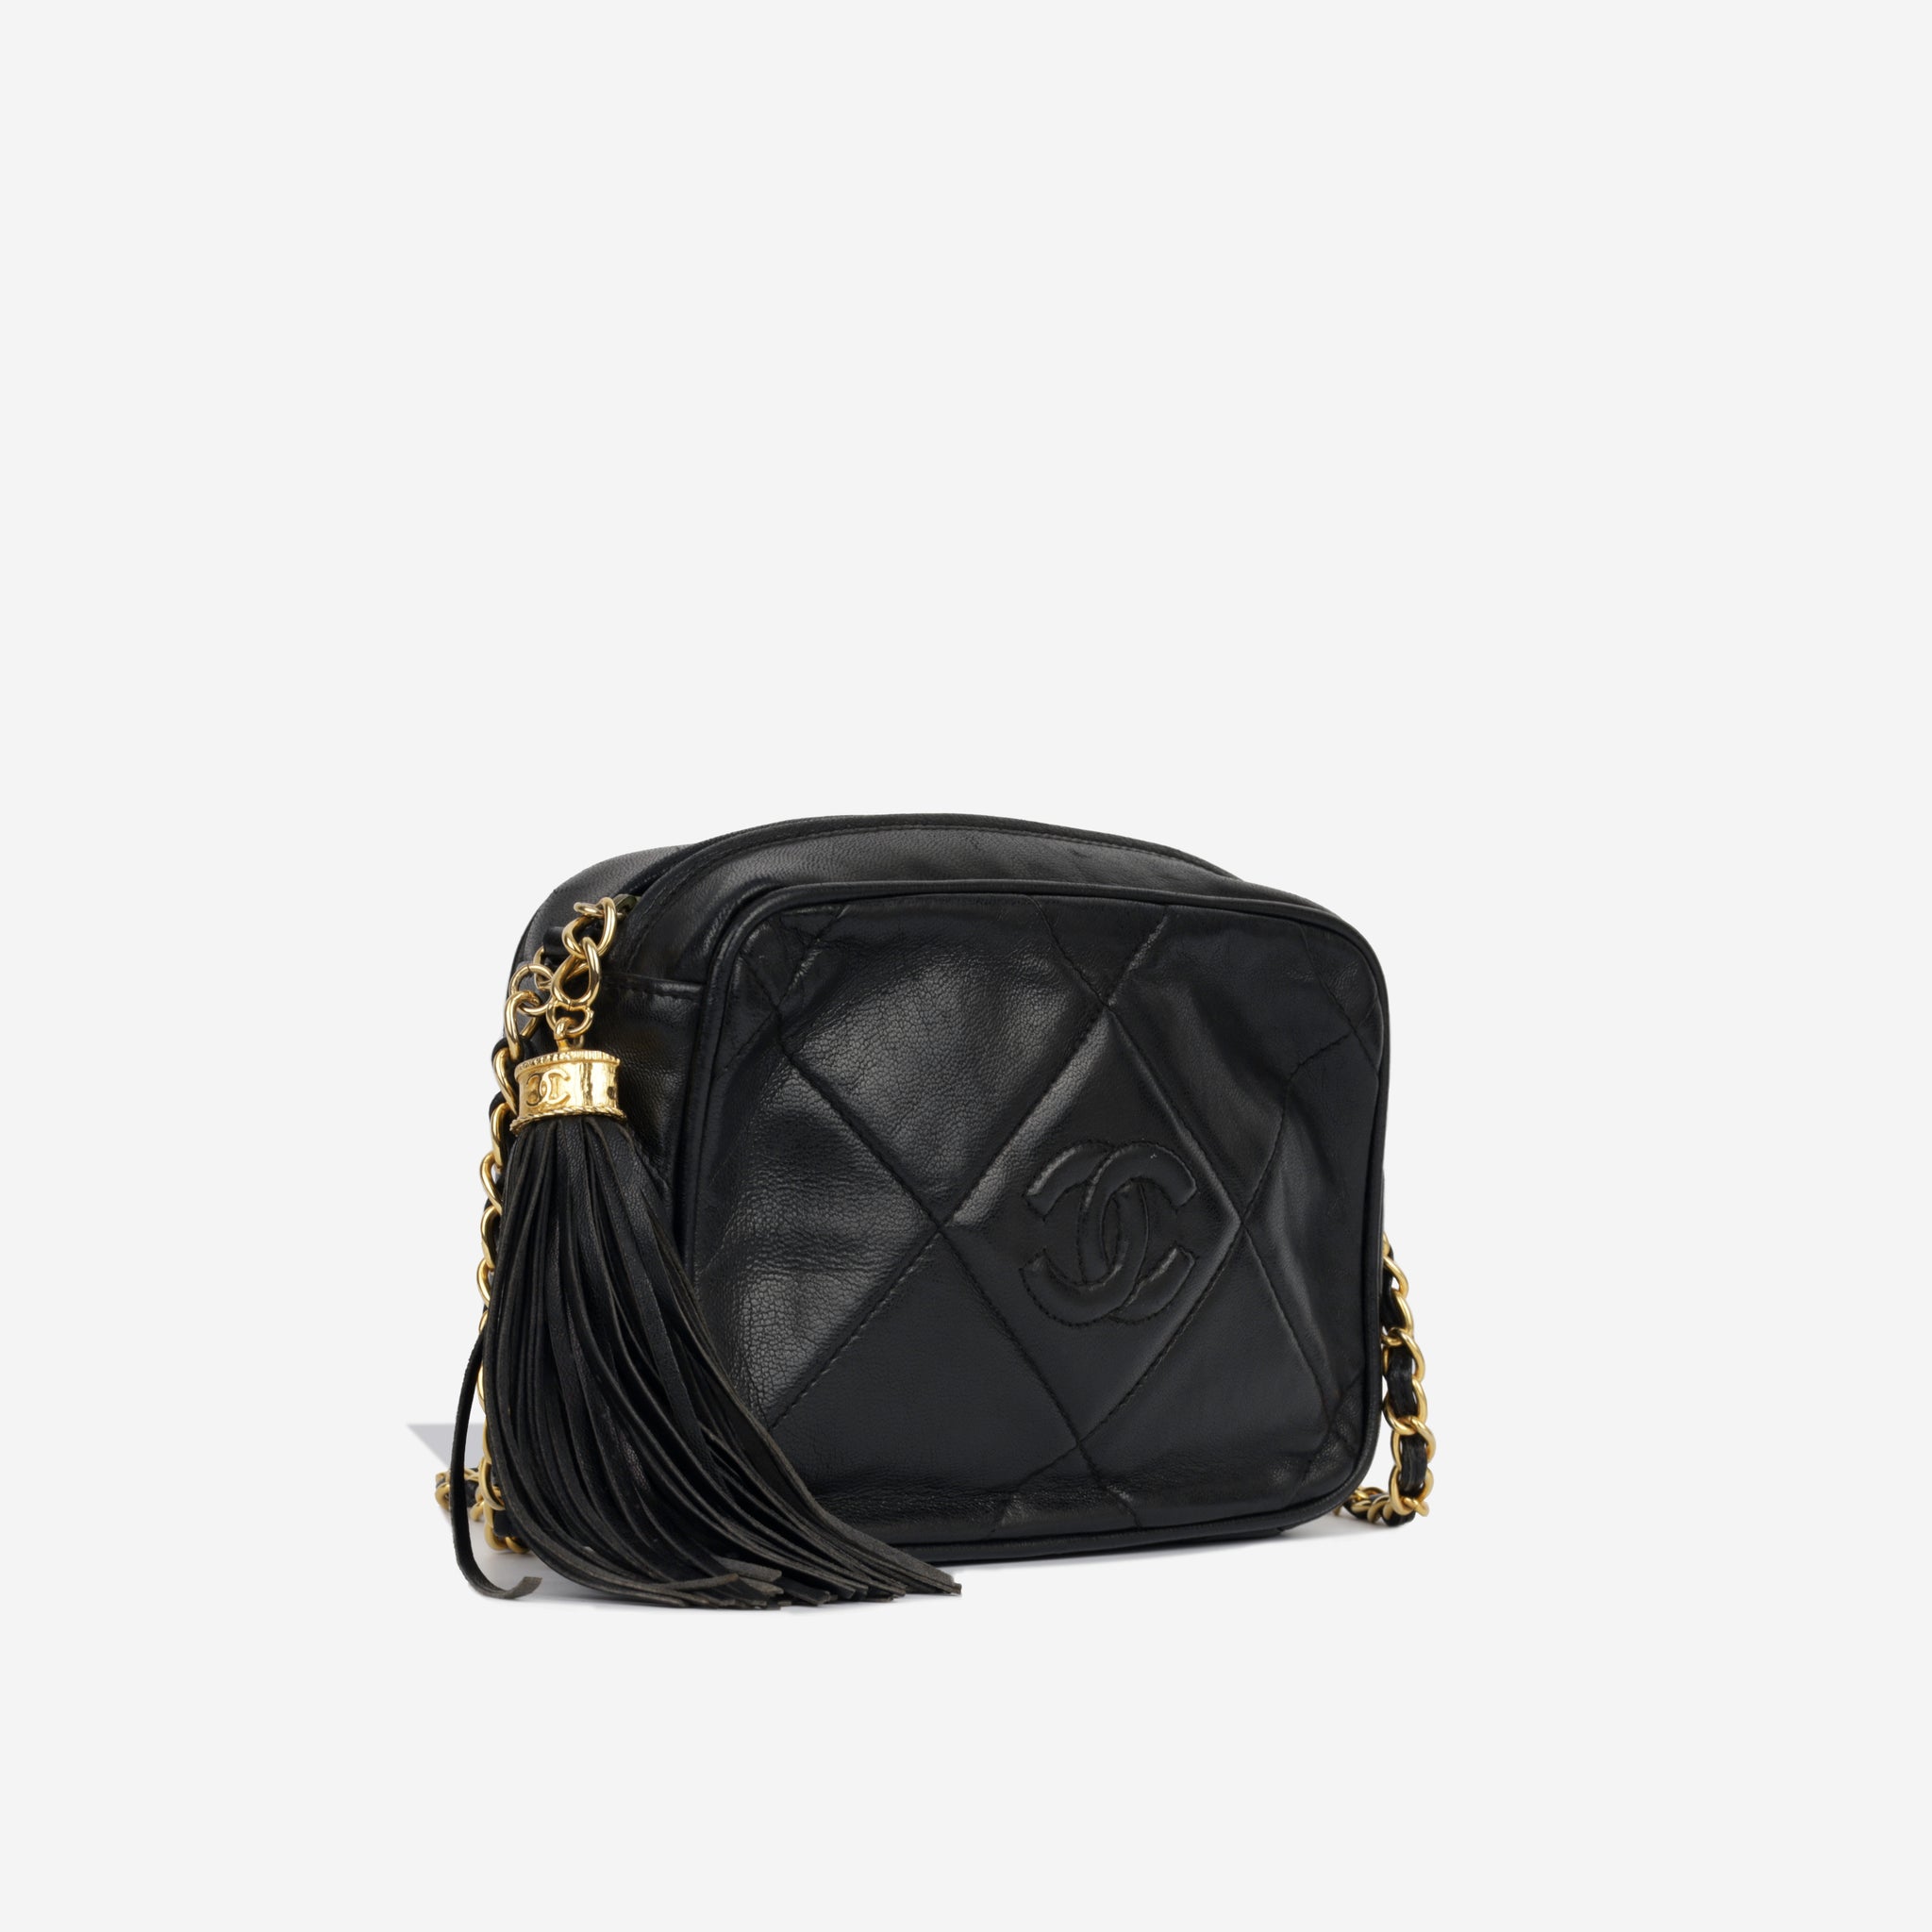 Chanel - Camera Bag - Black Lambskin GHW - Vintage